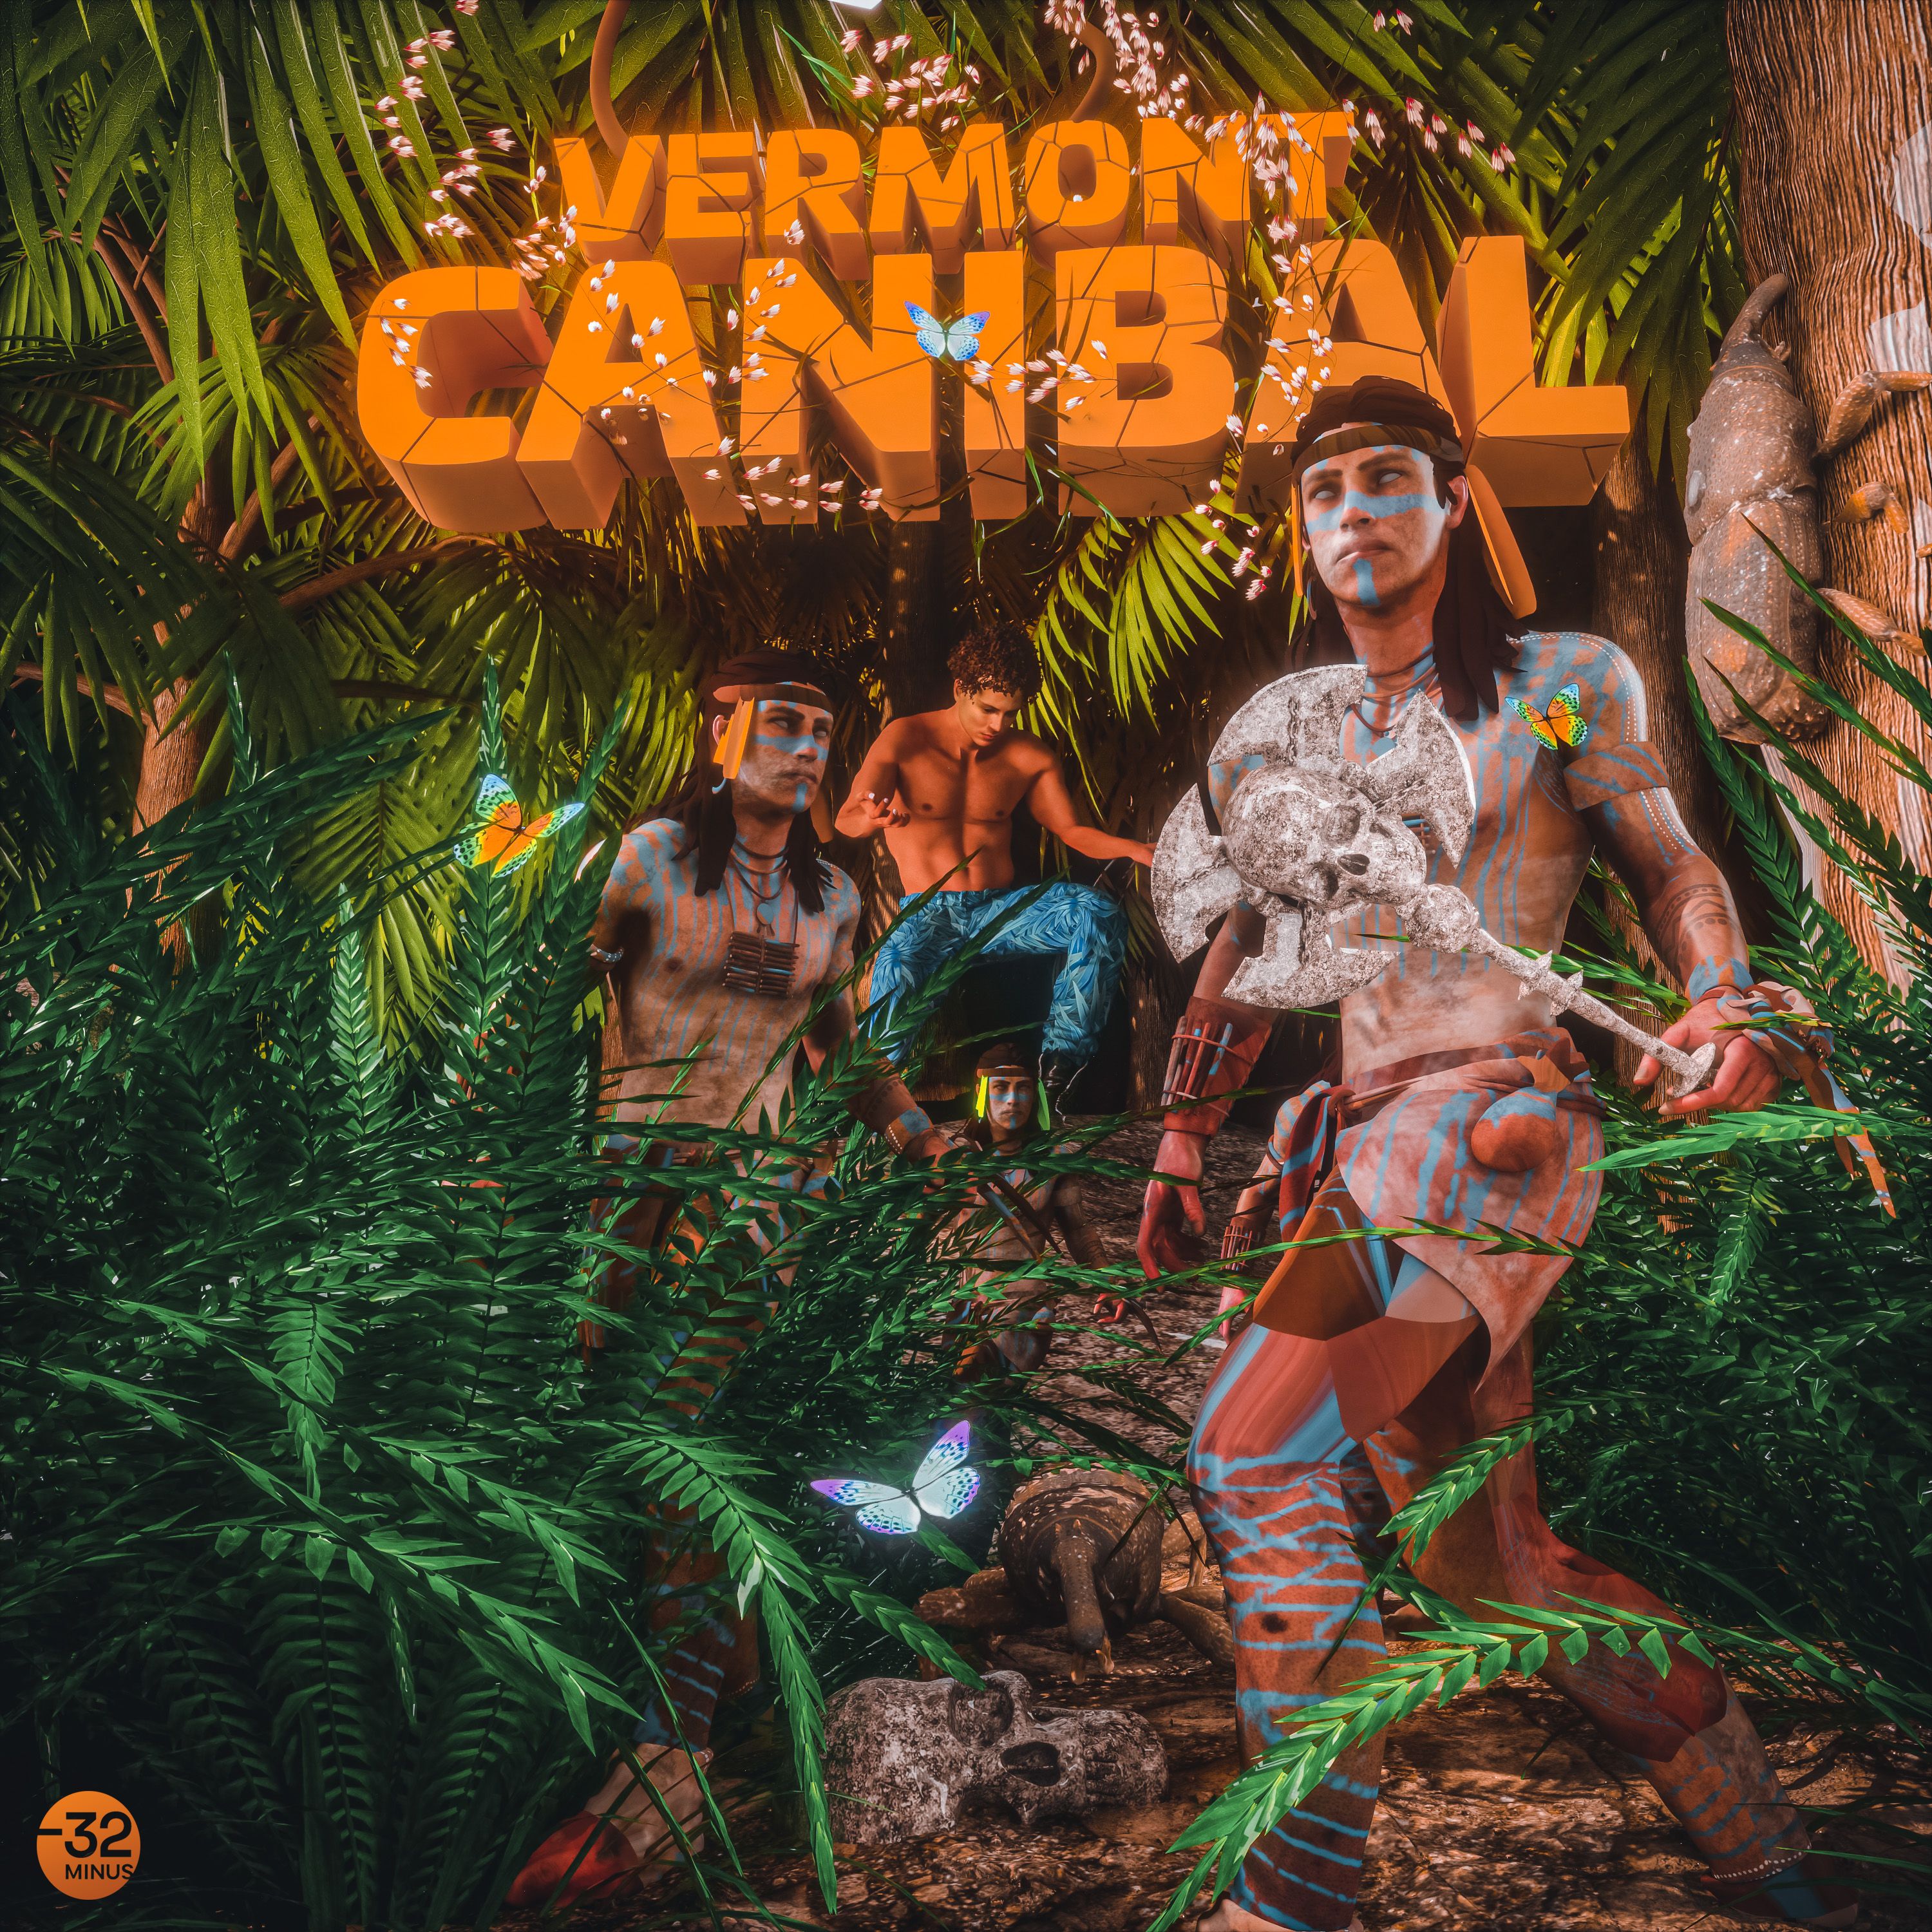 Pobierać Vermont - Canibal (Original Mix)